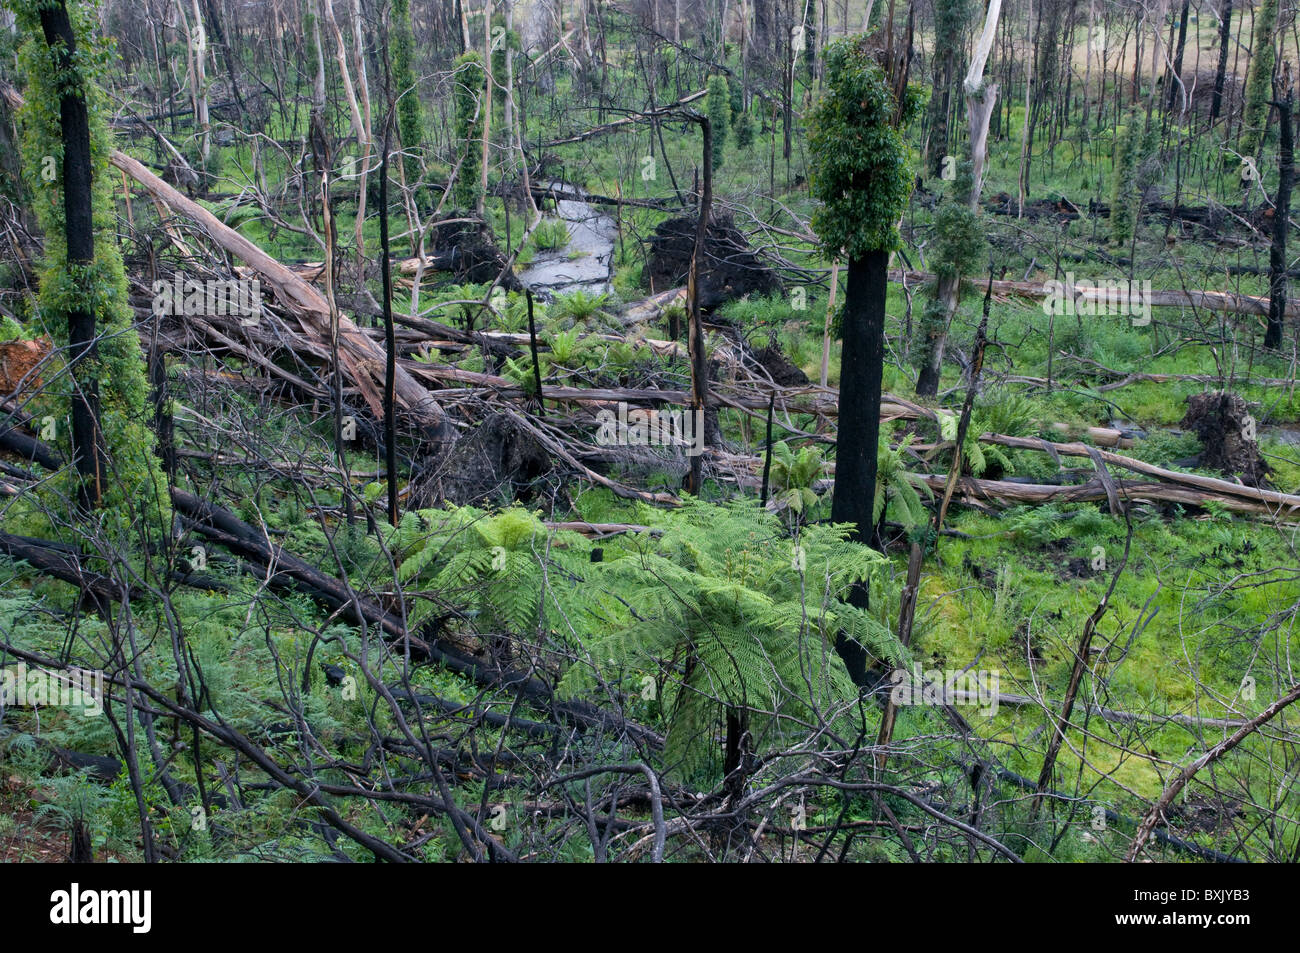 Fire árboles dañados y bush mostrando el regrowth un año después un dichas quemas Foto de stock